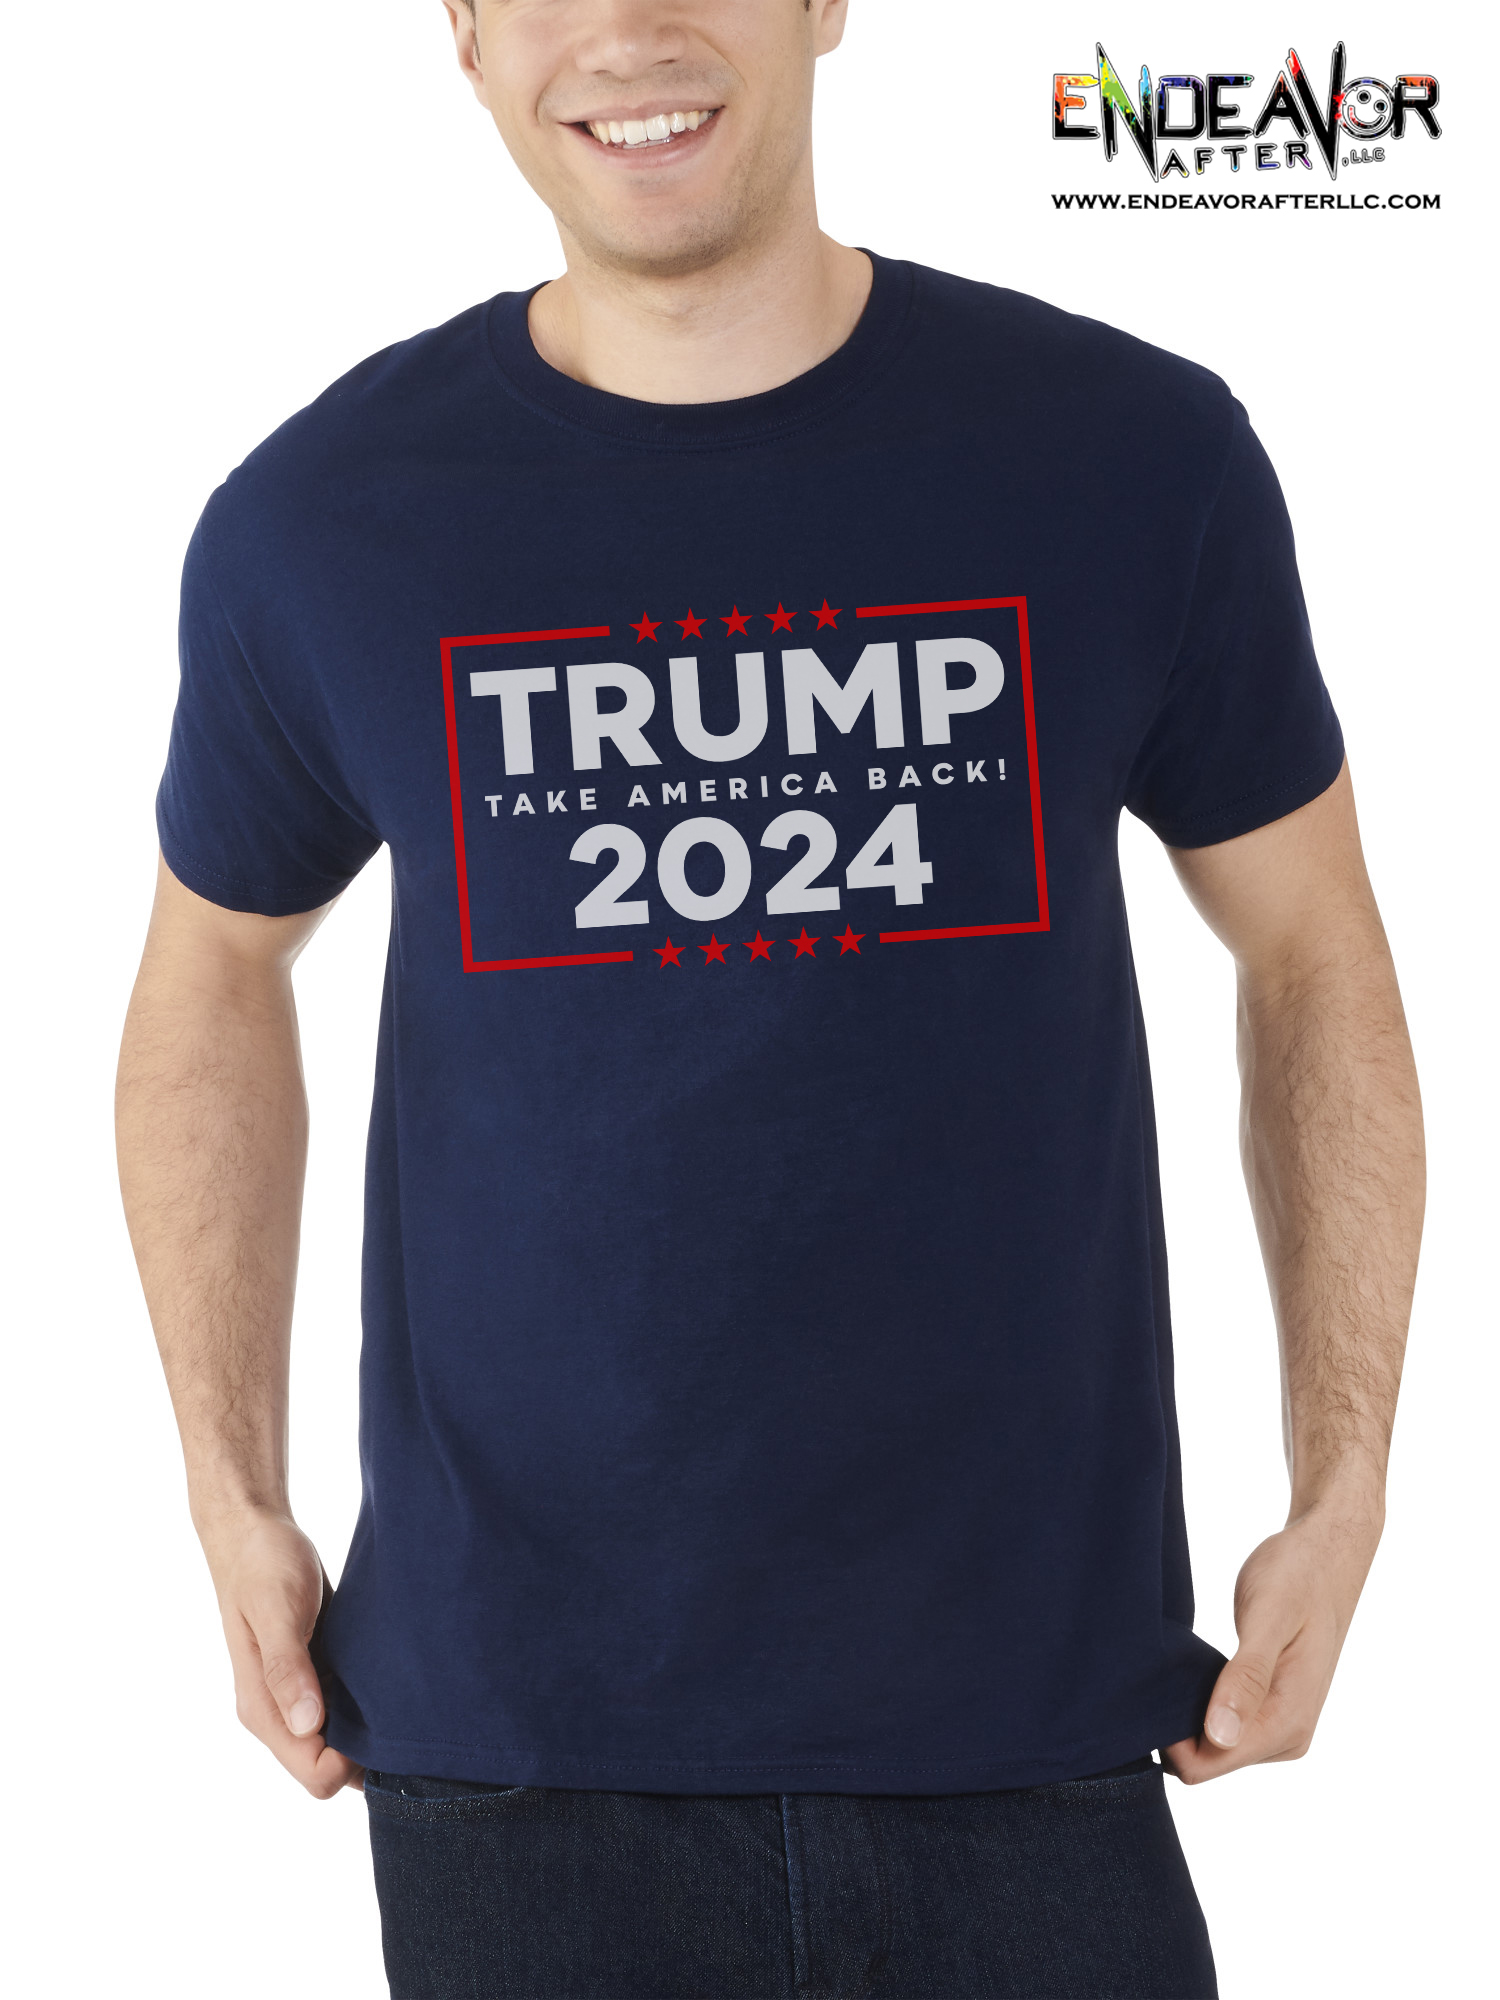 Trump 2024 - Endeavor After, LLC